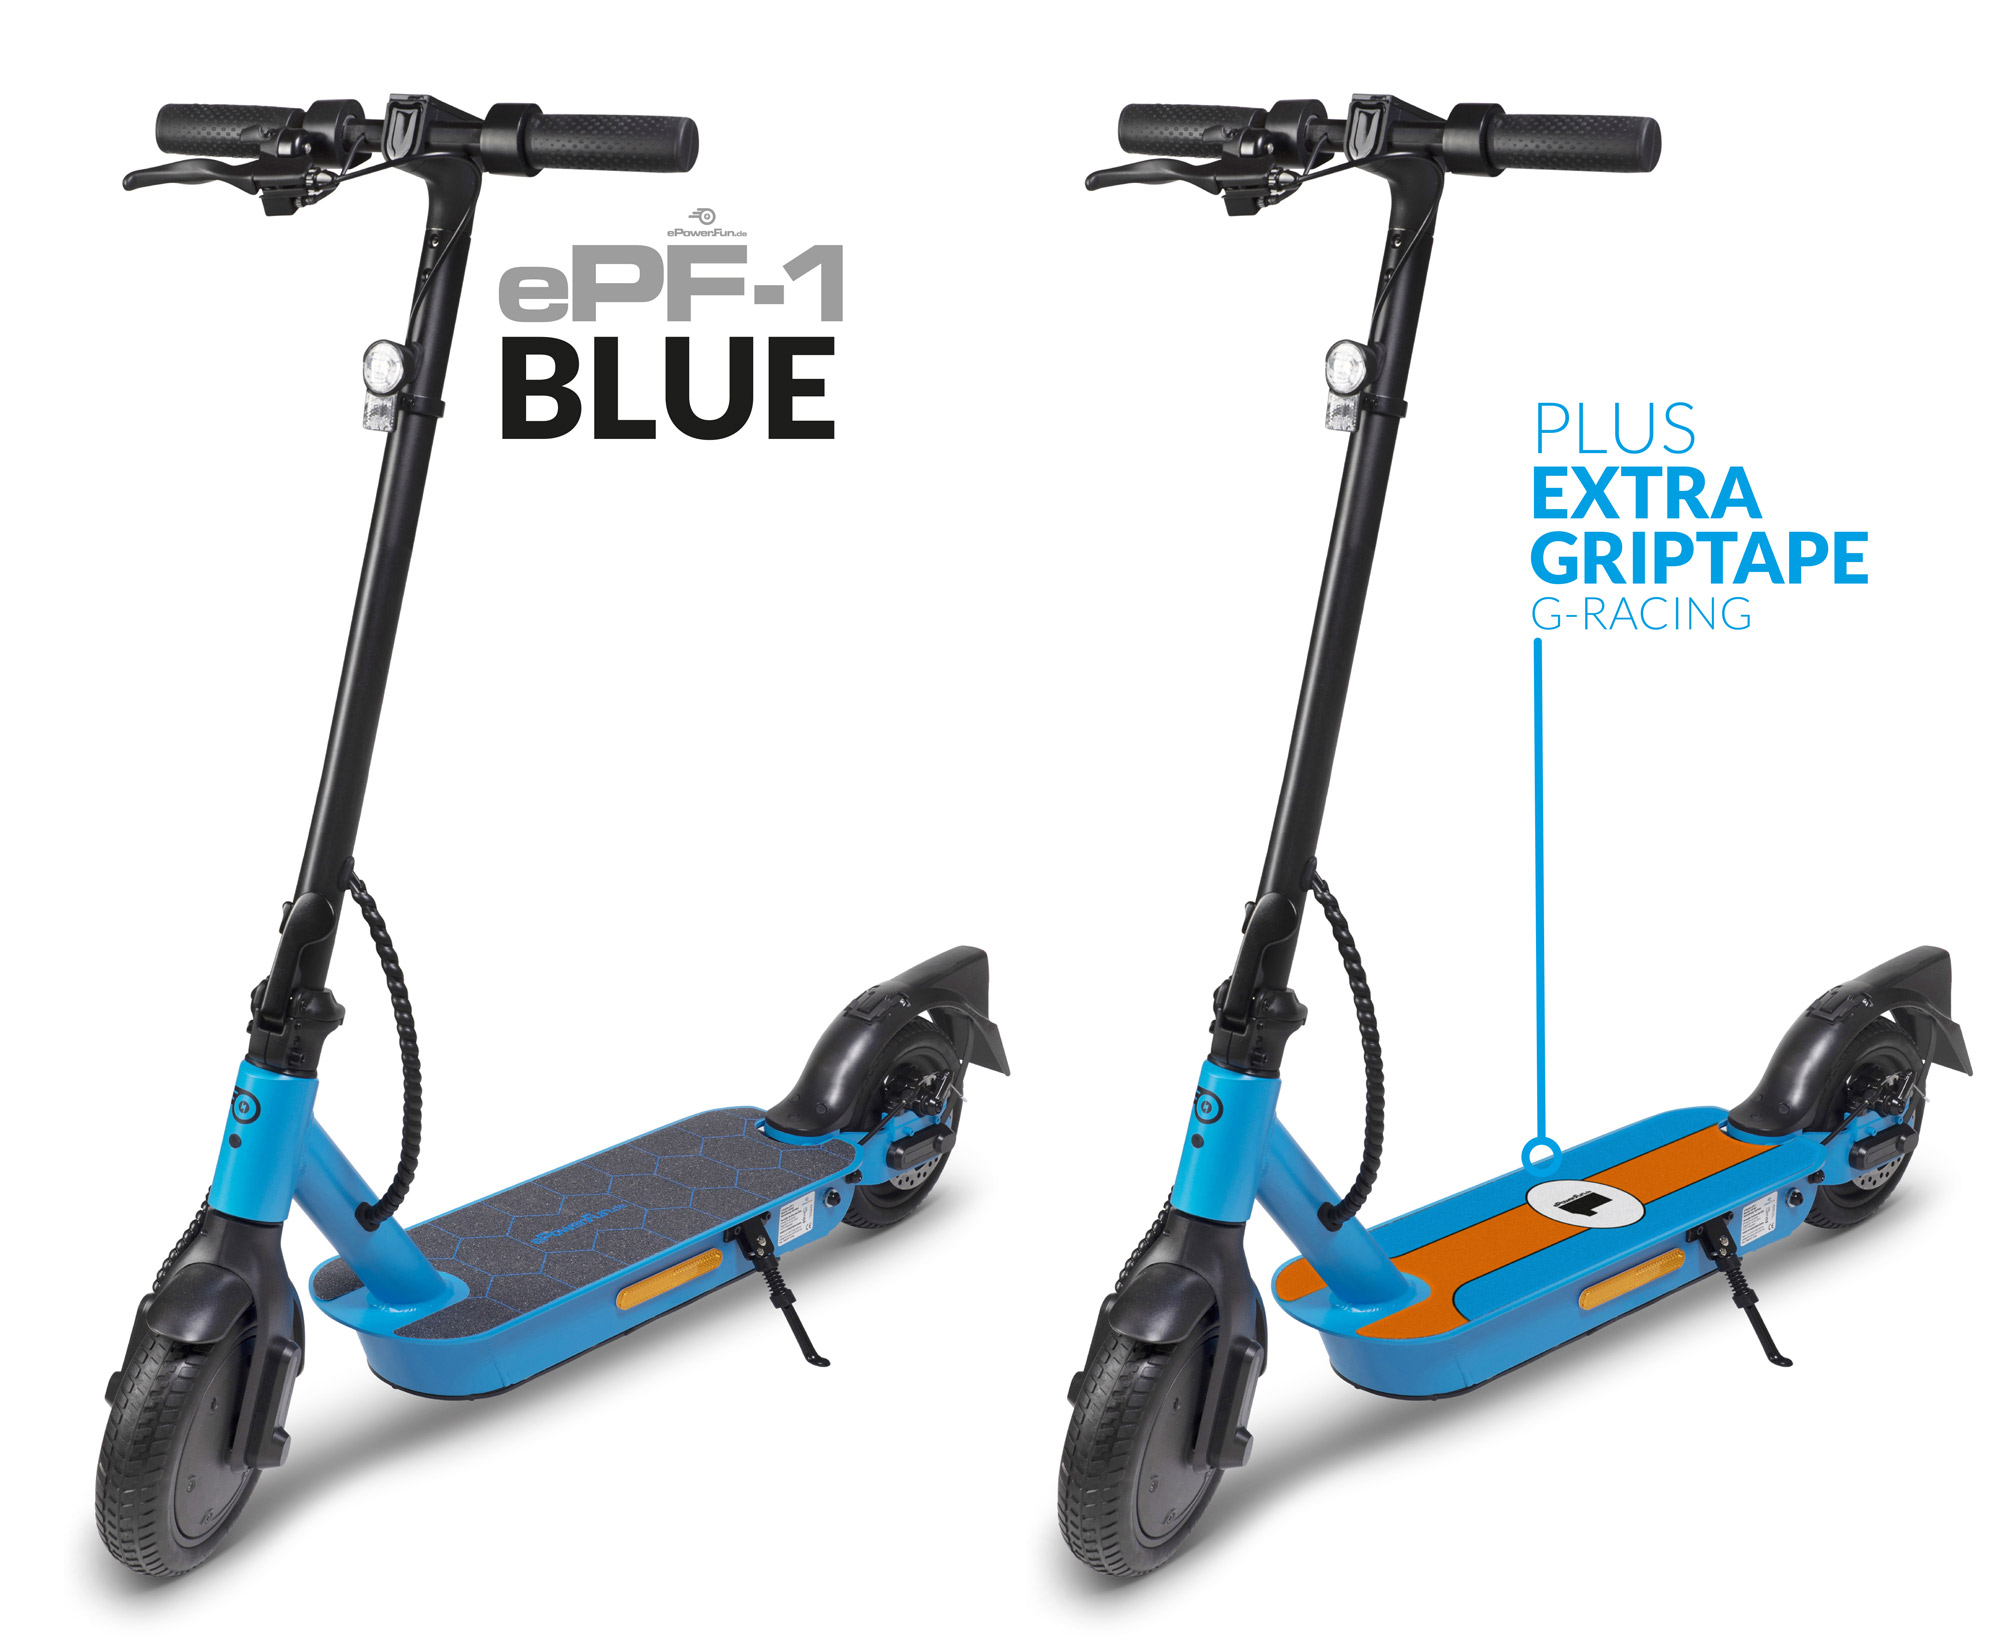 Vorbestellung - ePF-1 Blue eScooter mit Straßenzulassung